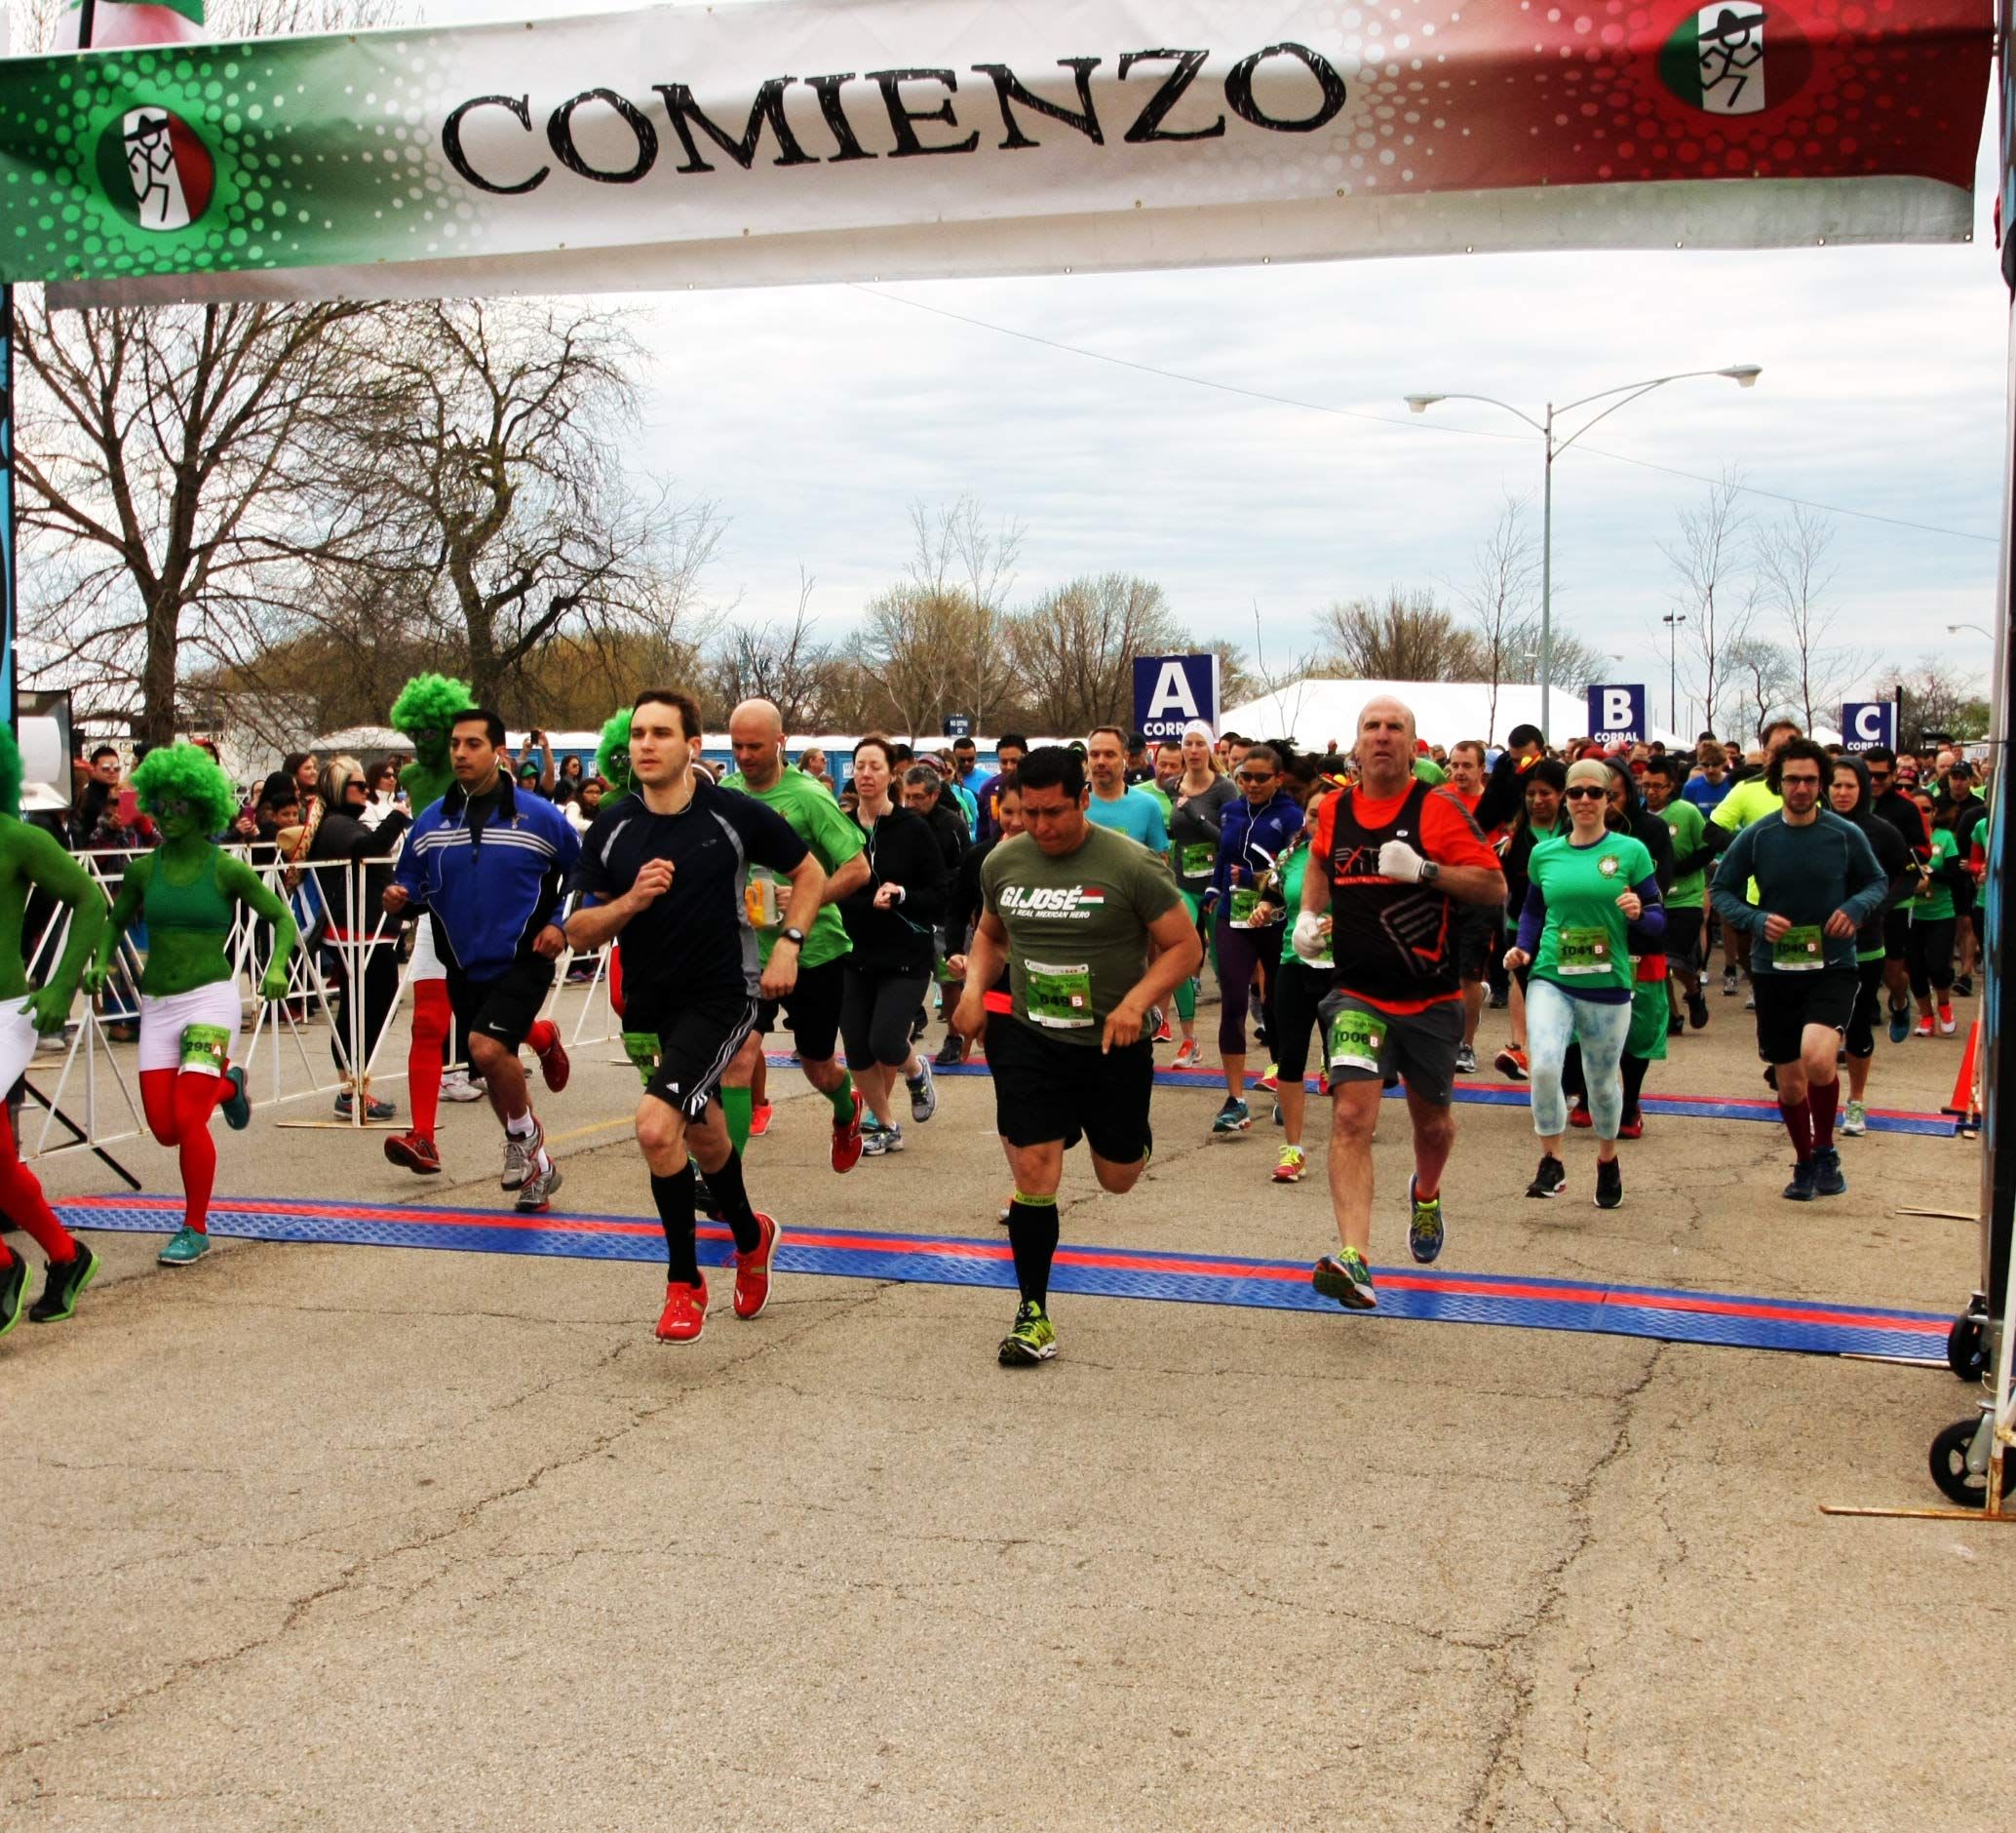 Cinco de Miler 5 Mile Race Fiesta 2020 Running in Chicago